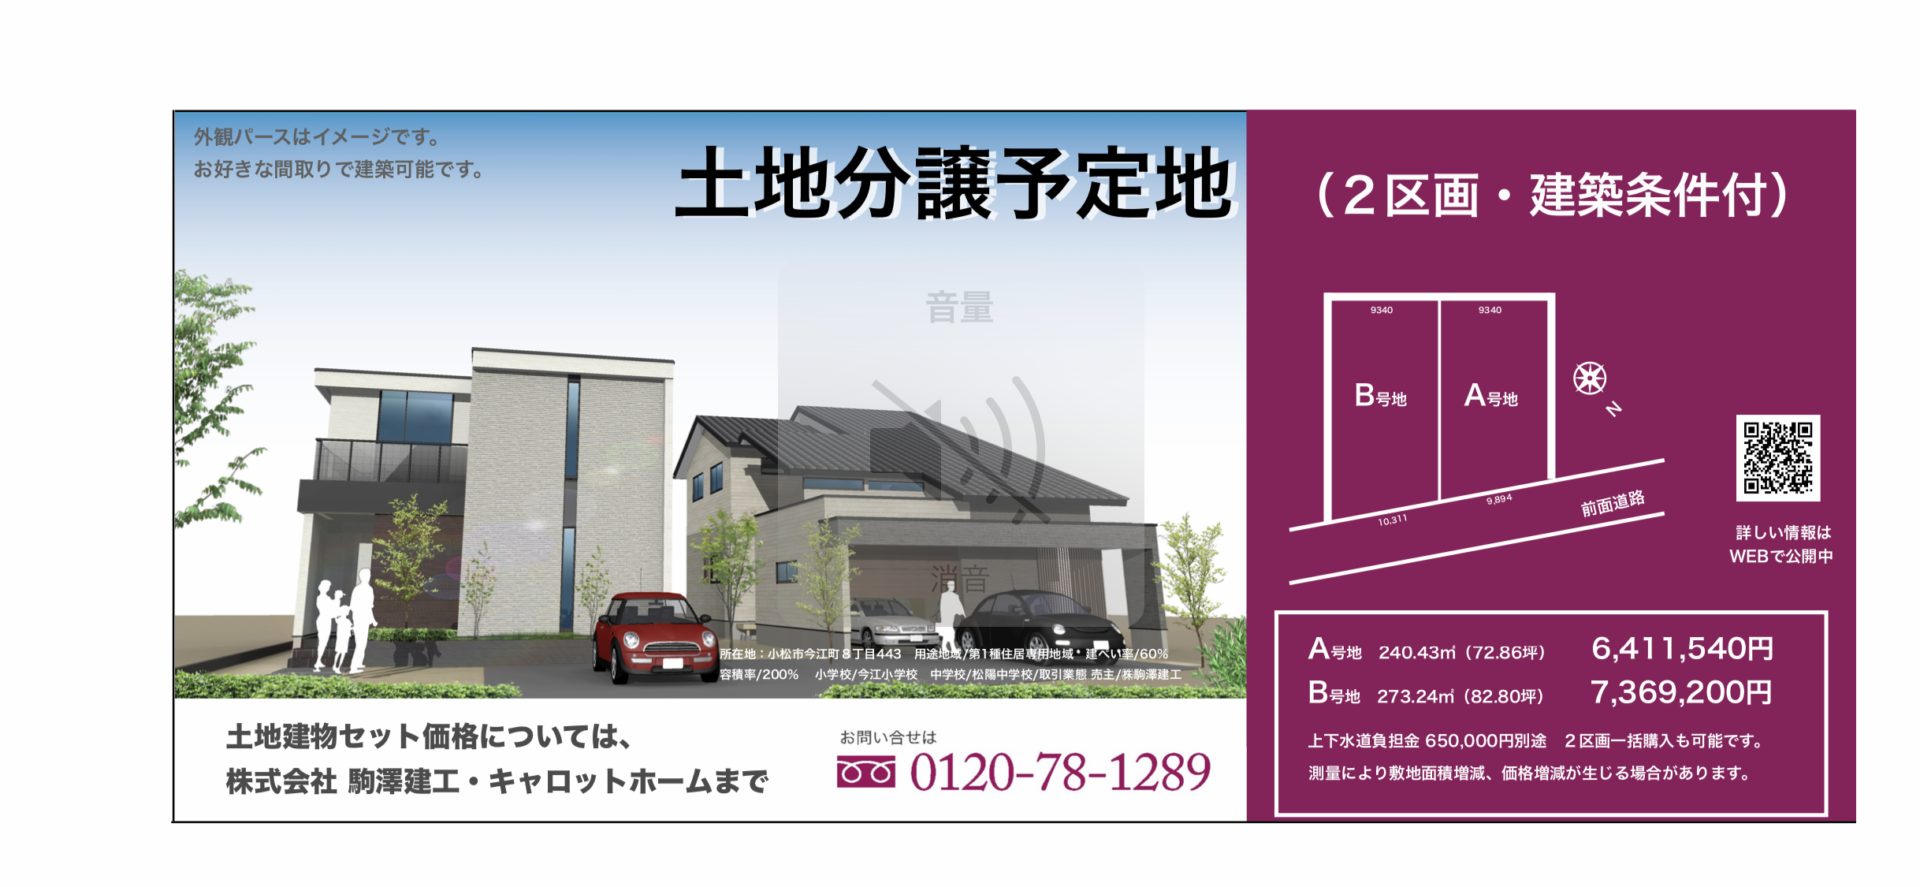 【小松今江分譲地】ゆとりの70坪の敷地で新しい住まいはいかがでしょう